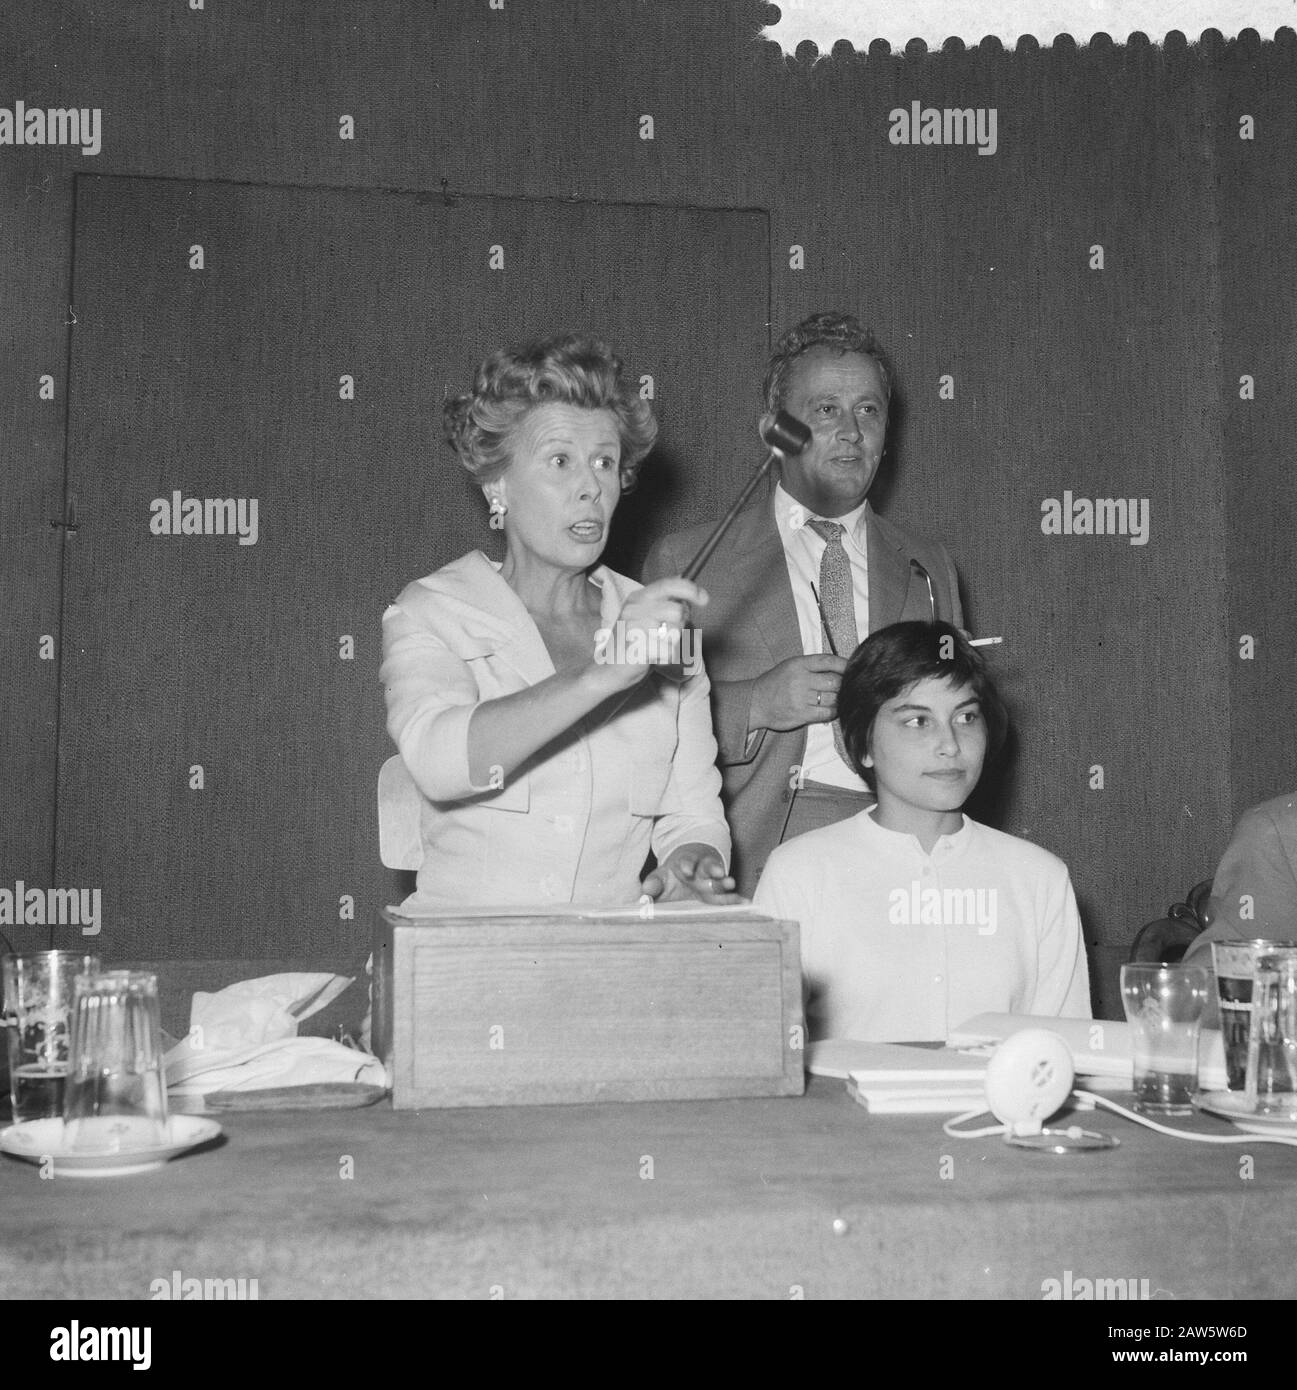 Mary Dresselhuys comme commissaire aux enchères à Mak of Waay Date : 22 septembre 1959 mots clés : auctioneers Nom De La Personne : Dresselhuys, Mary, waay, Mak Banque D'Images